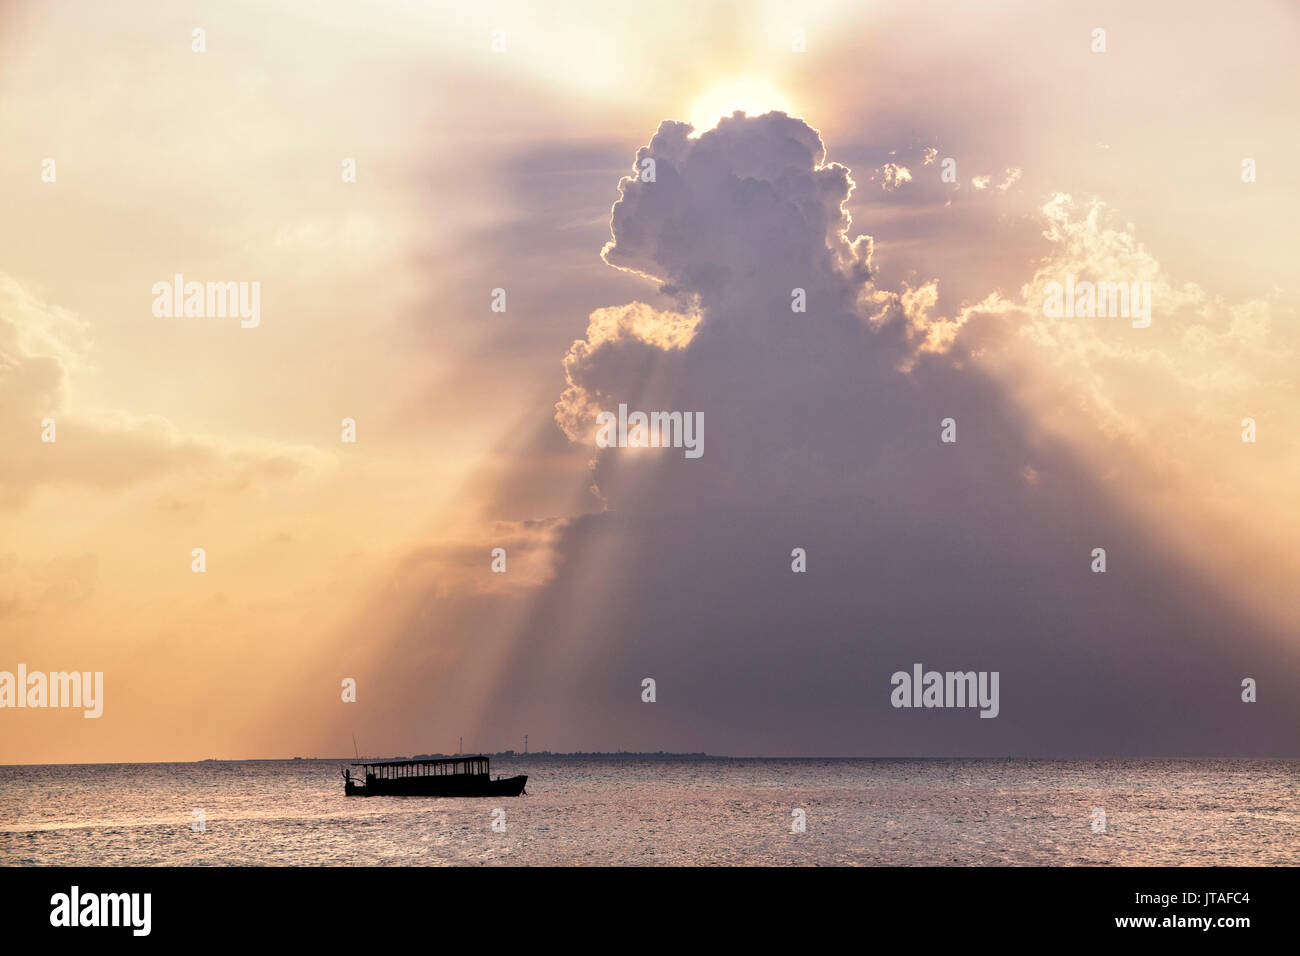 Dramatische Wolkenformationen und Boot in silhoutte bei Sonnenuntergang, Dhuni Kolhu Baa Atoll, Malediven, Indischer Ozean, Asien Stockfoto